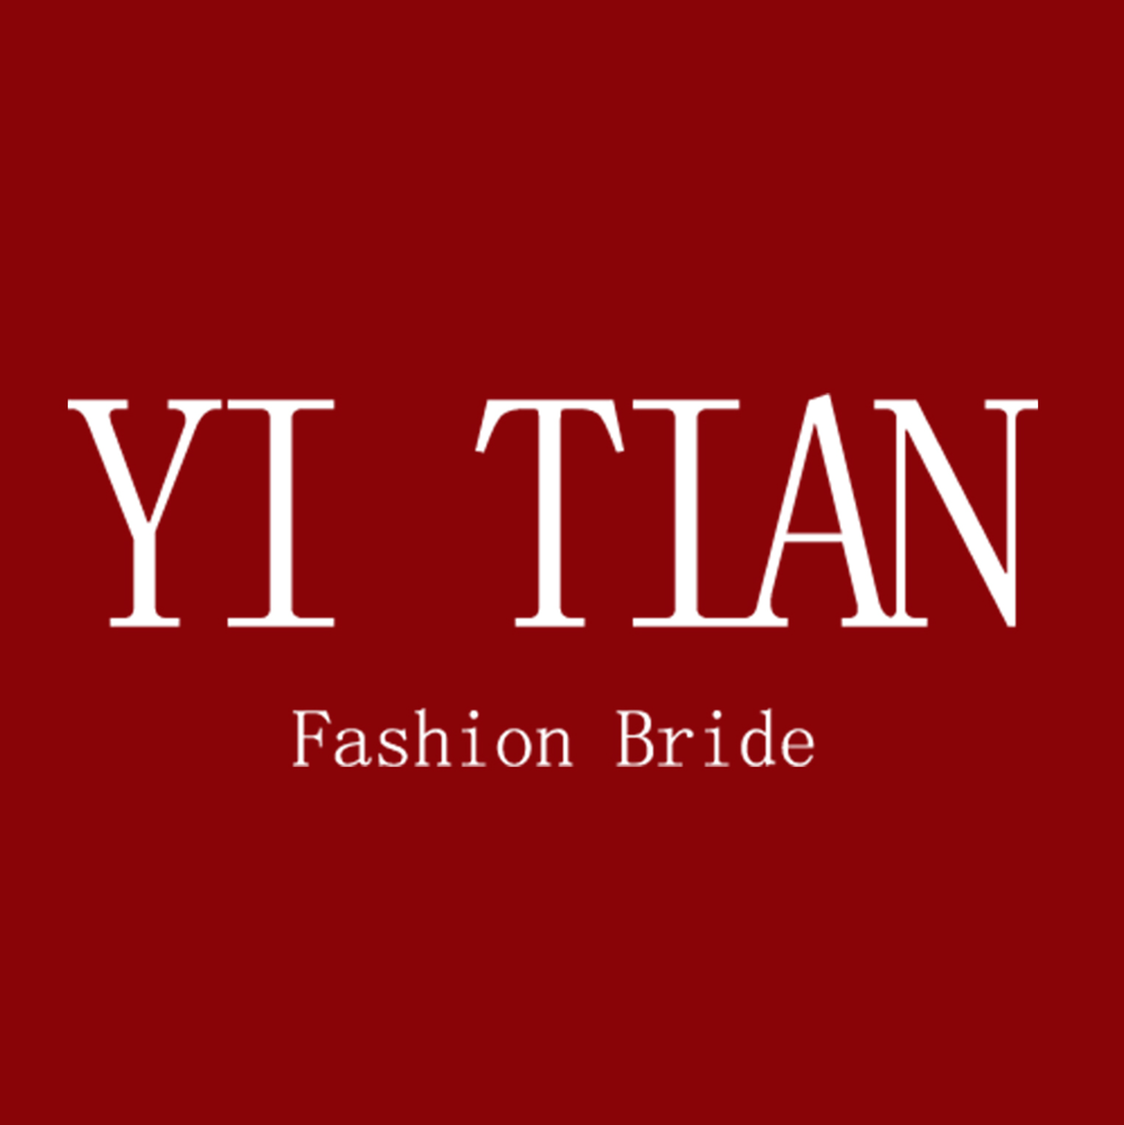 Yi Tian时尚新娘婚纱礼服馆